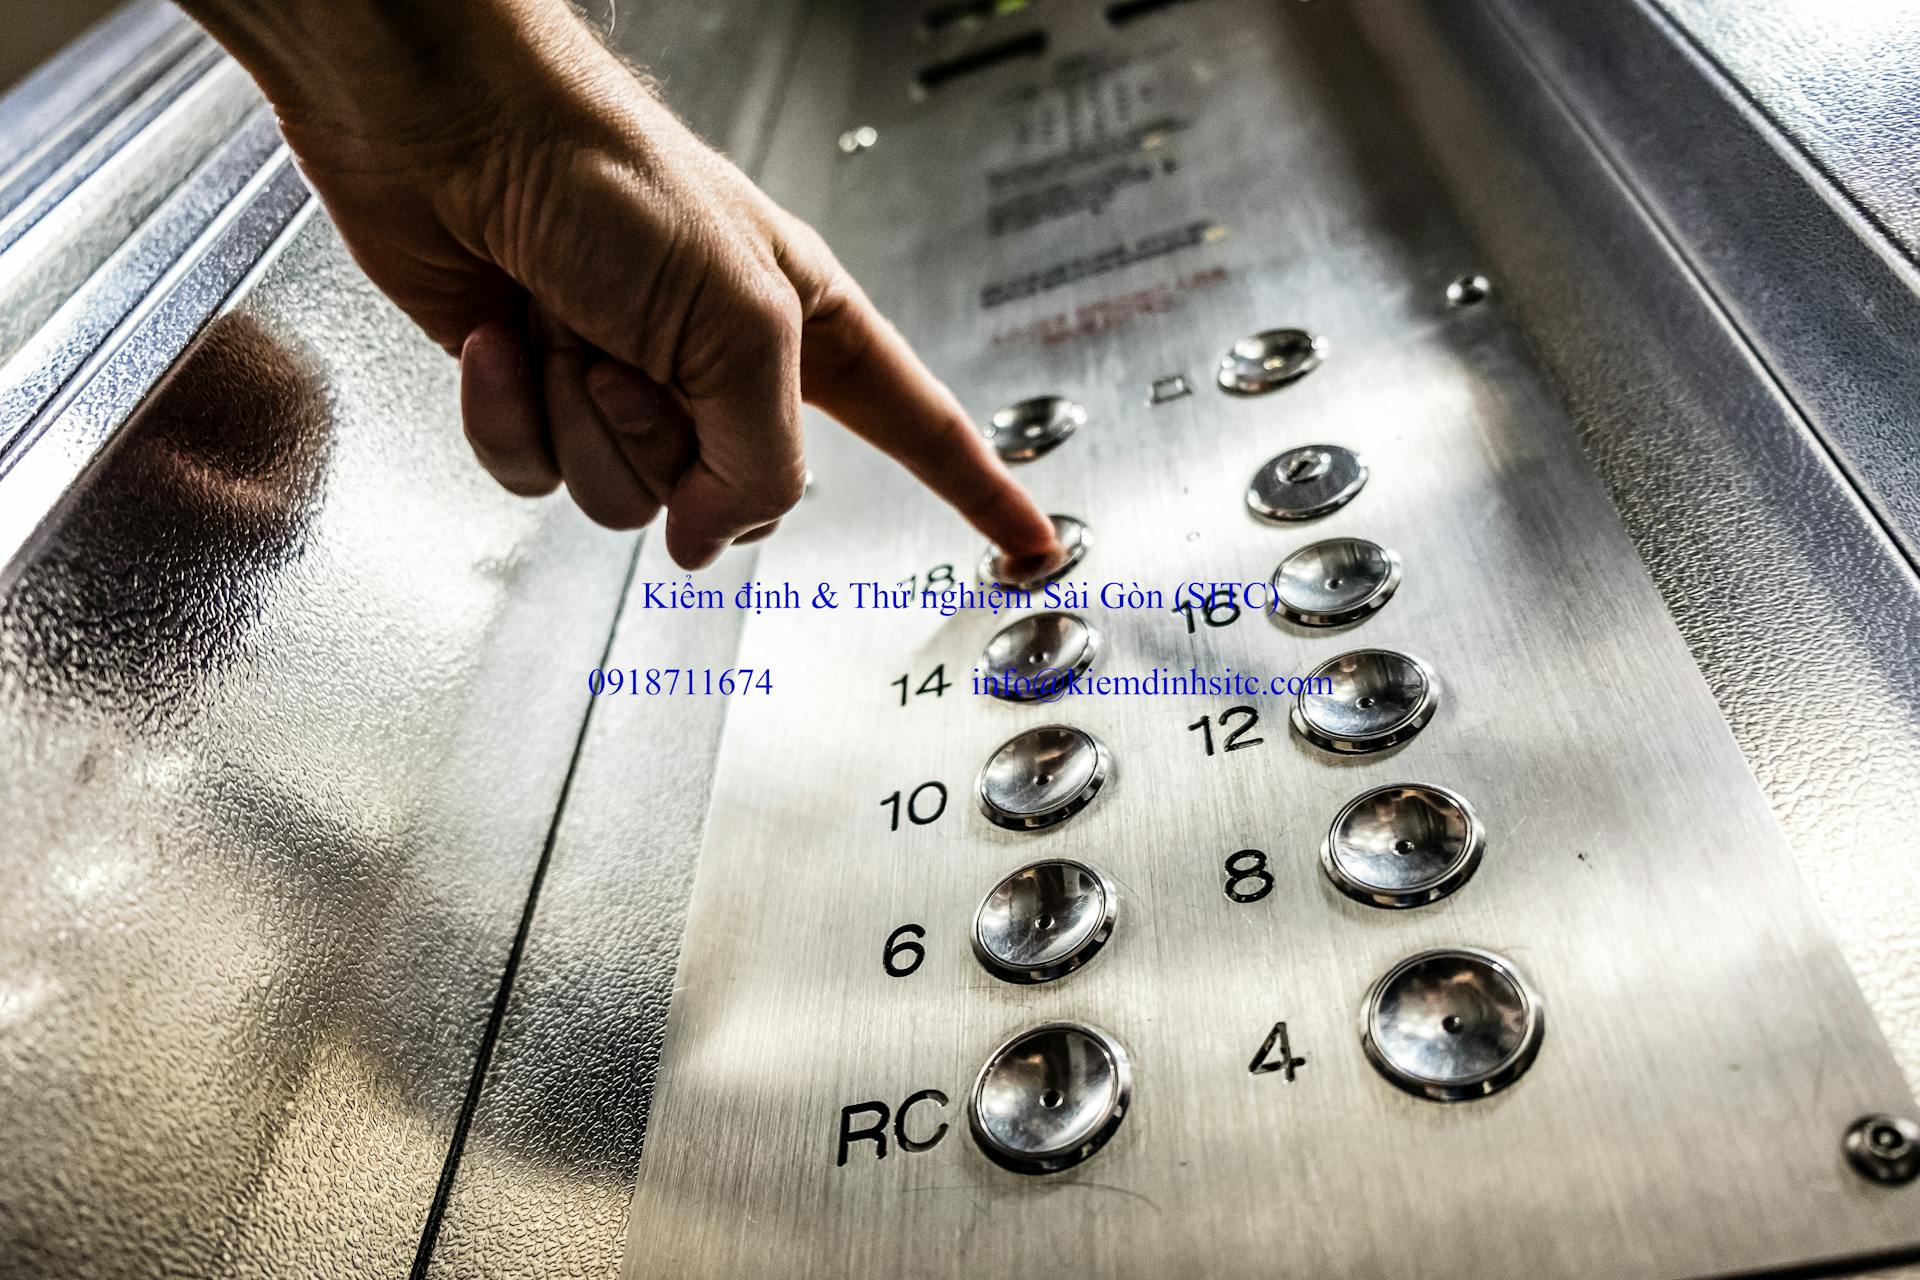 Bảo trì thang máy là tổ hợp kiểm tra kỹ thuật nhằm đảm bảo thiết bị được vận hành liên tục trong an toàn.